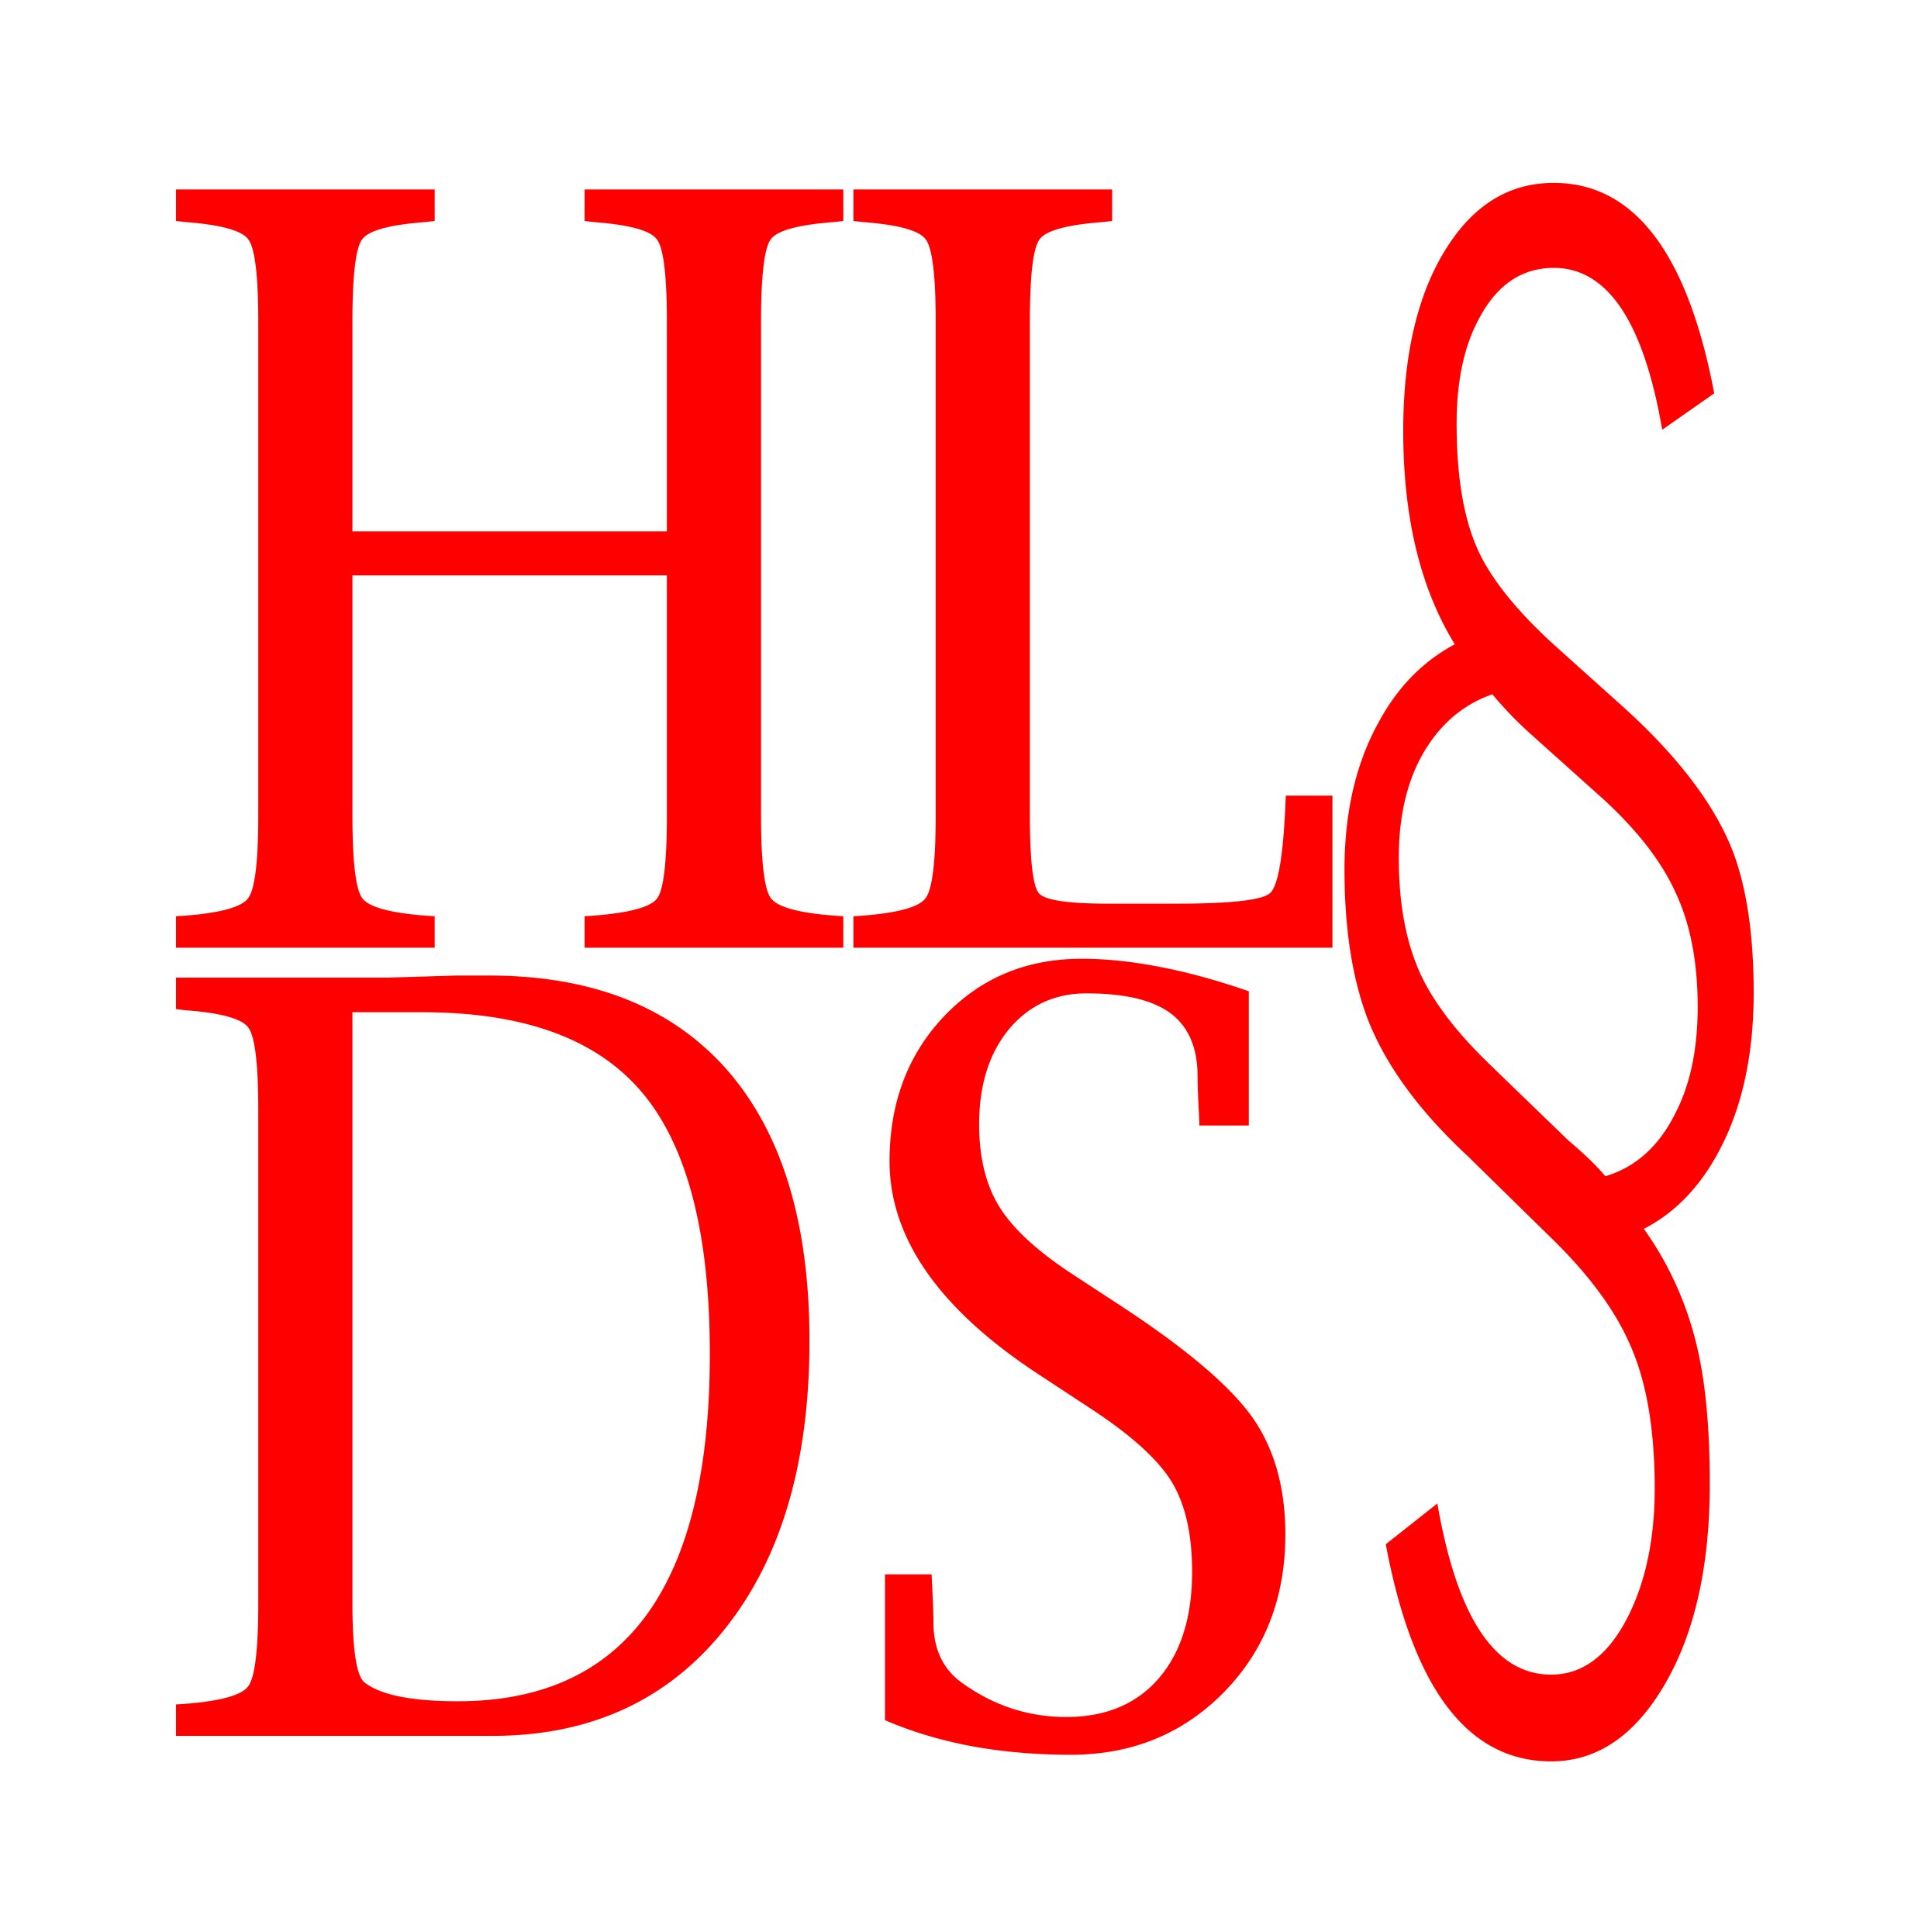 (c) Hlds-law.de